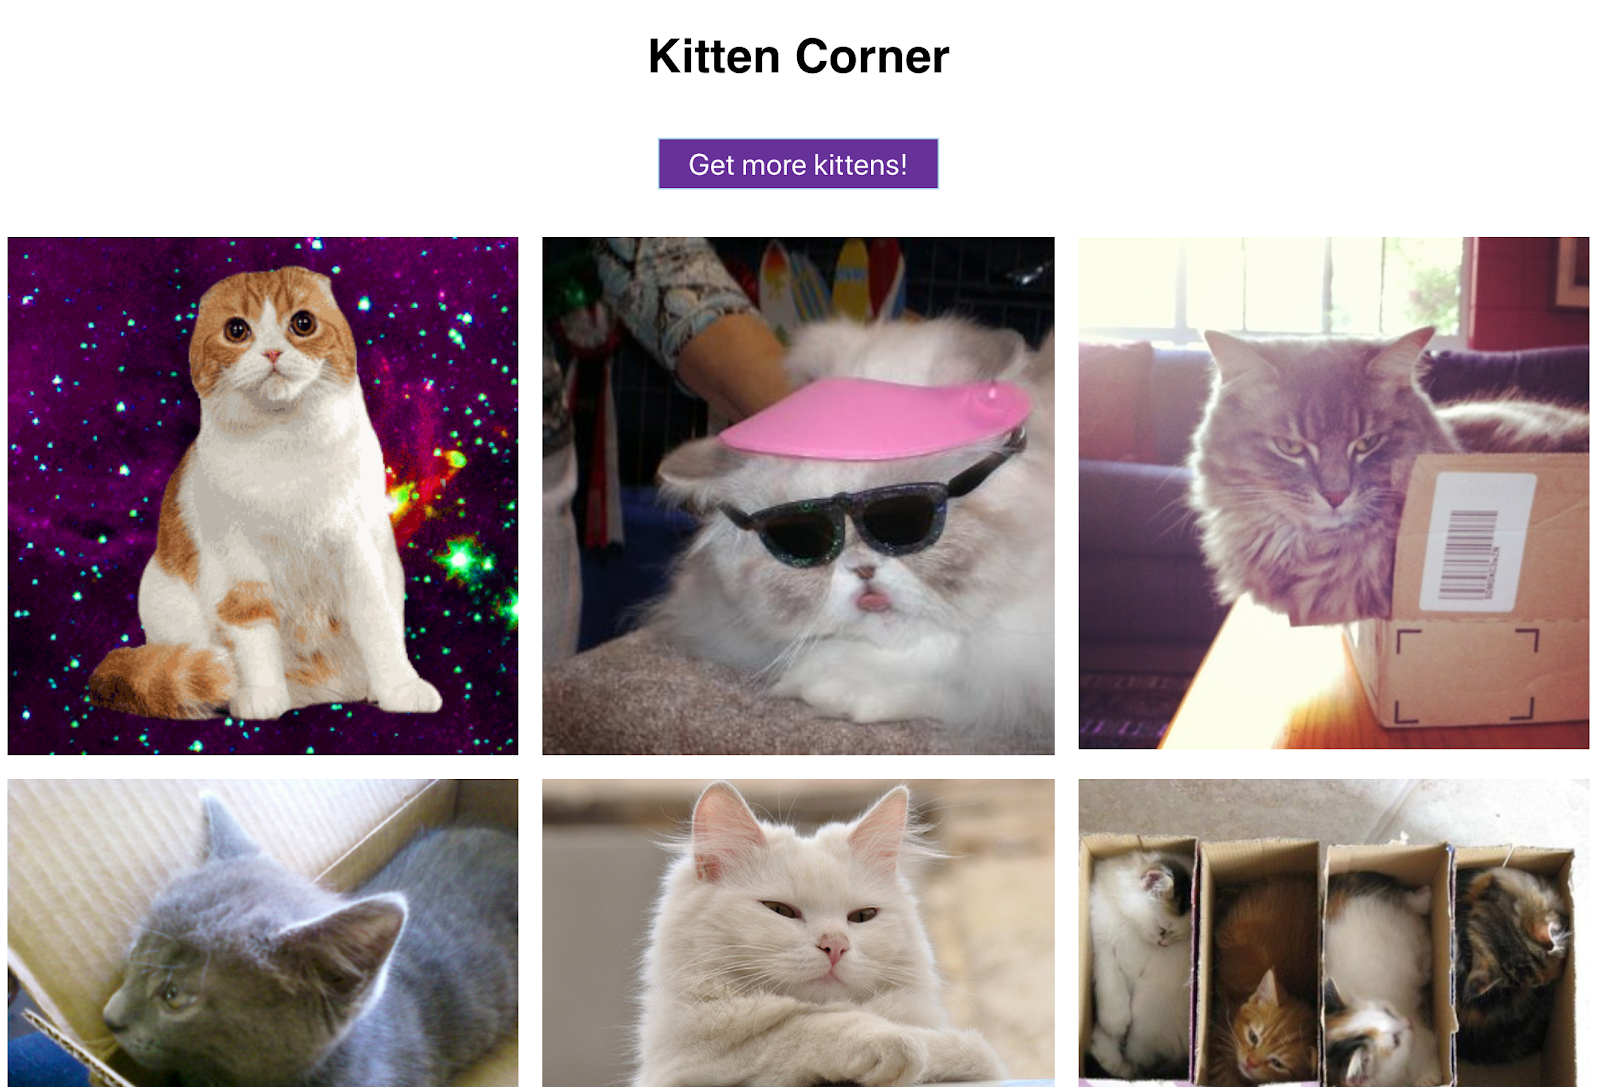 귀여운 고양이 이미지를 그리드 형식으로 표시하고 버튼도 한 개 있습니다. 그야말로 완벽한 웹 앱이죠!